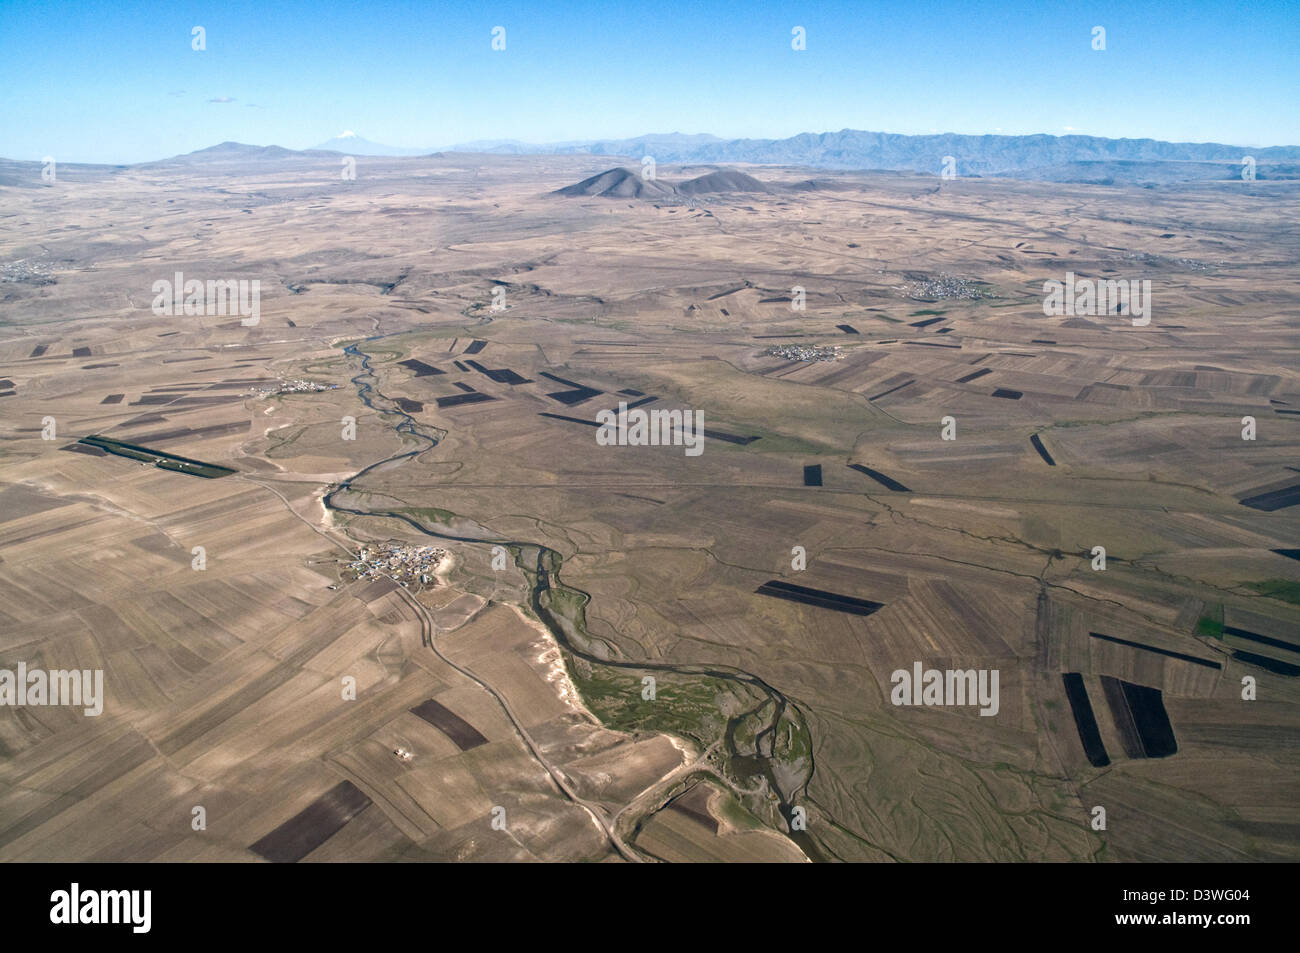 Vista aérea de las estepas turcas cerca de la ciudad de Kars y de la frontera Armenia en la región oriental de Anatolia, al noreste de Turquía. Foto de stock